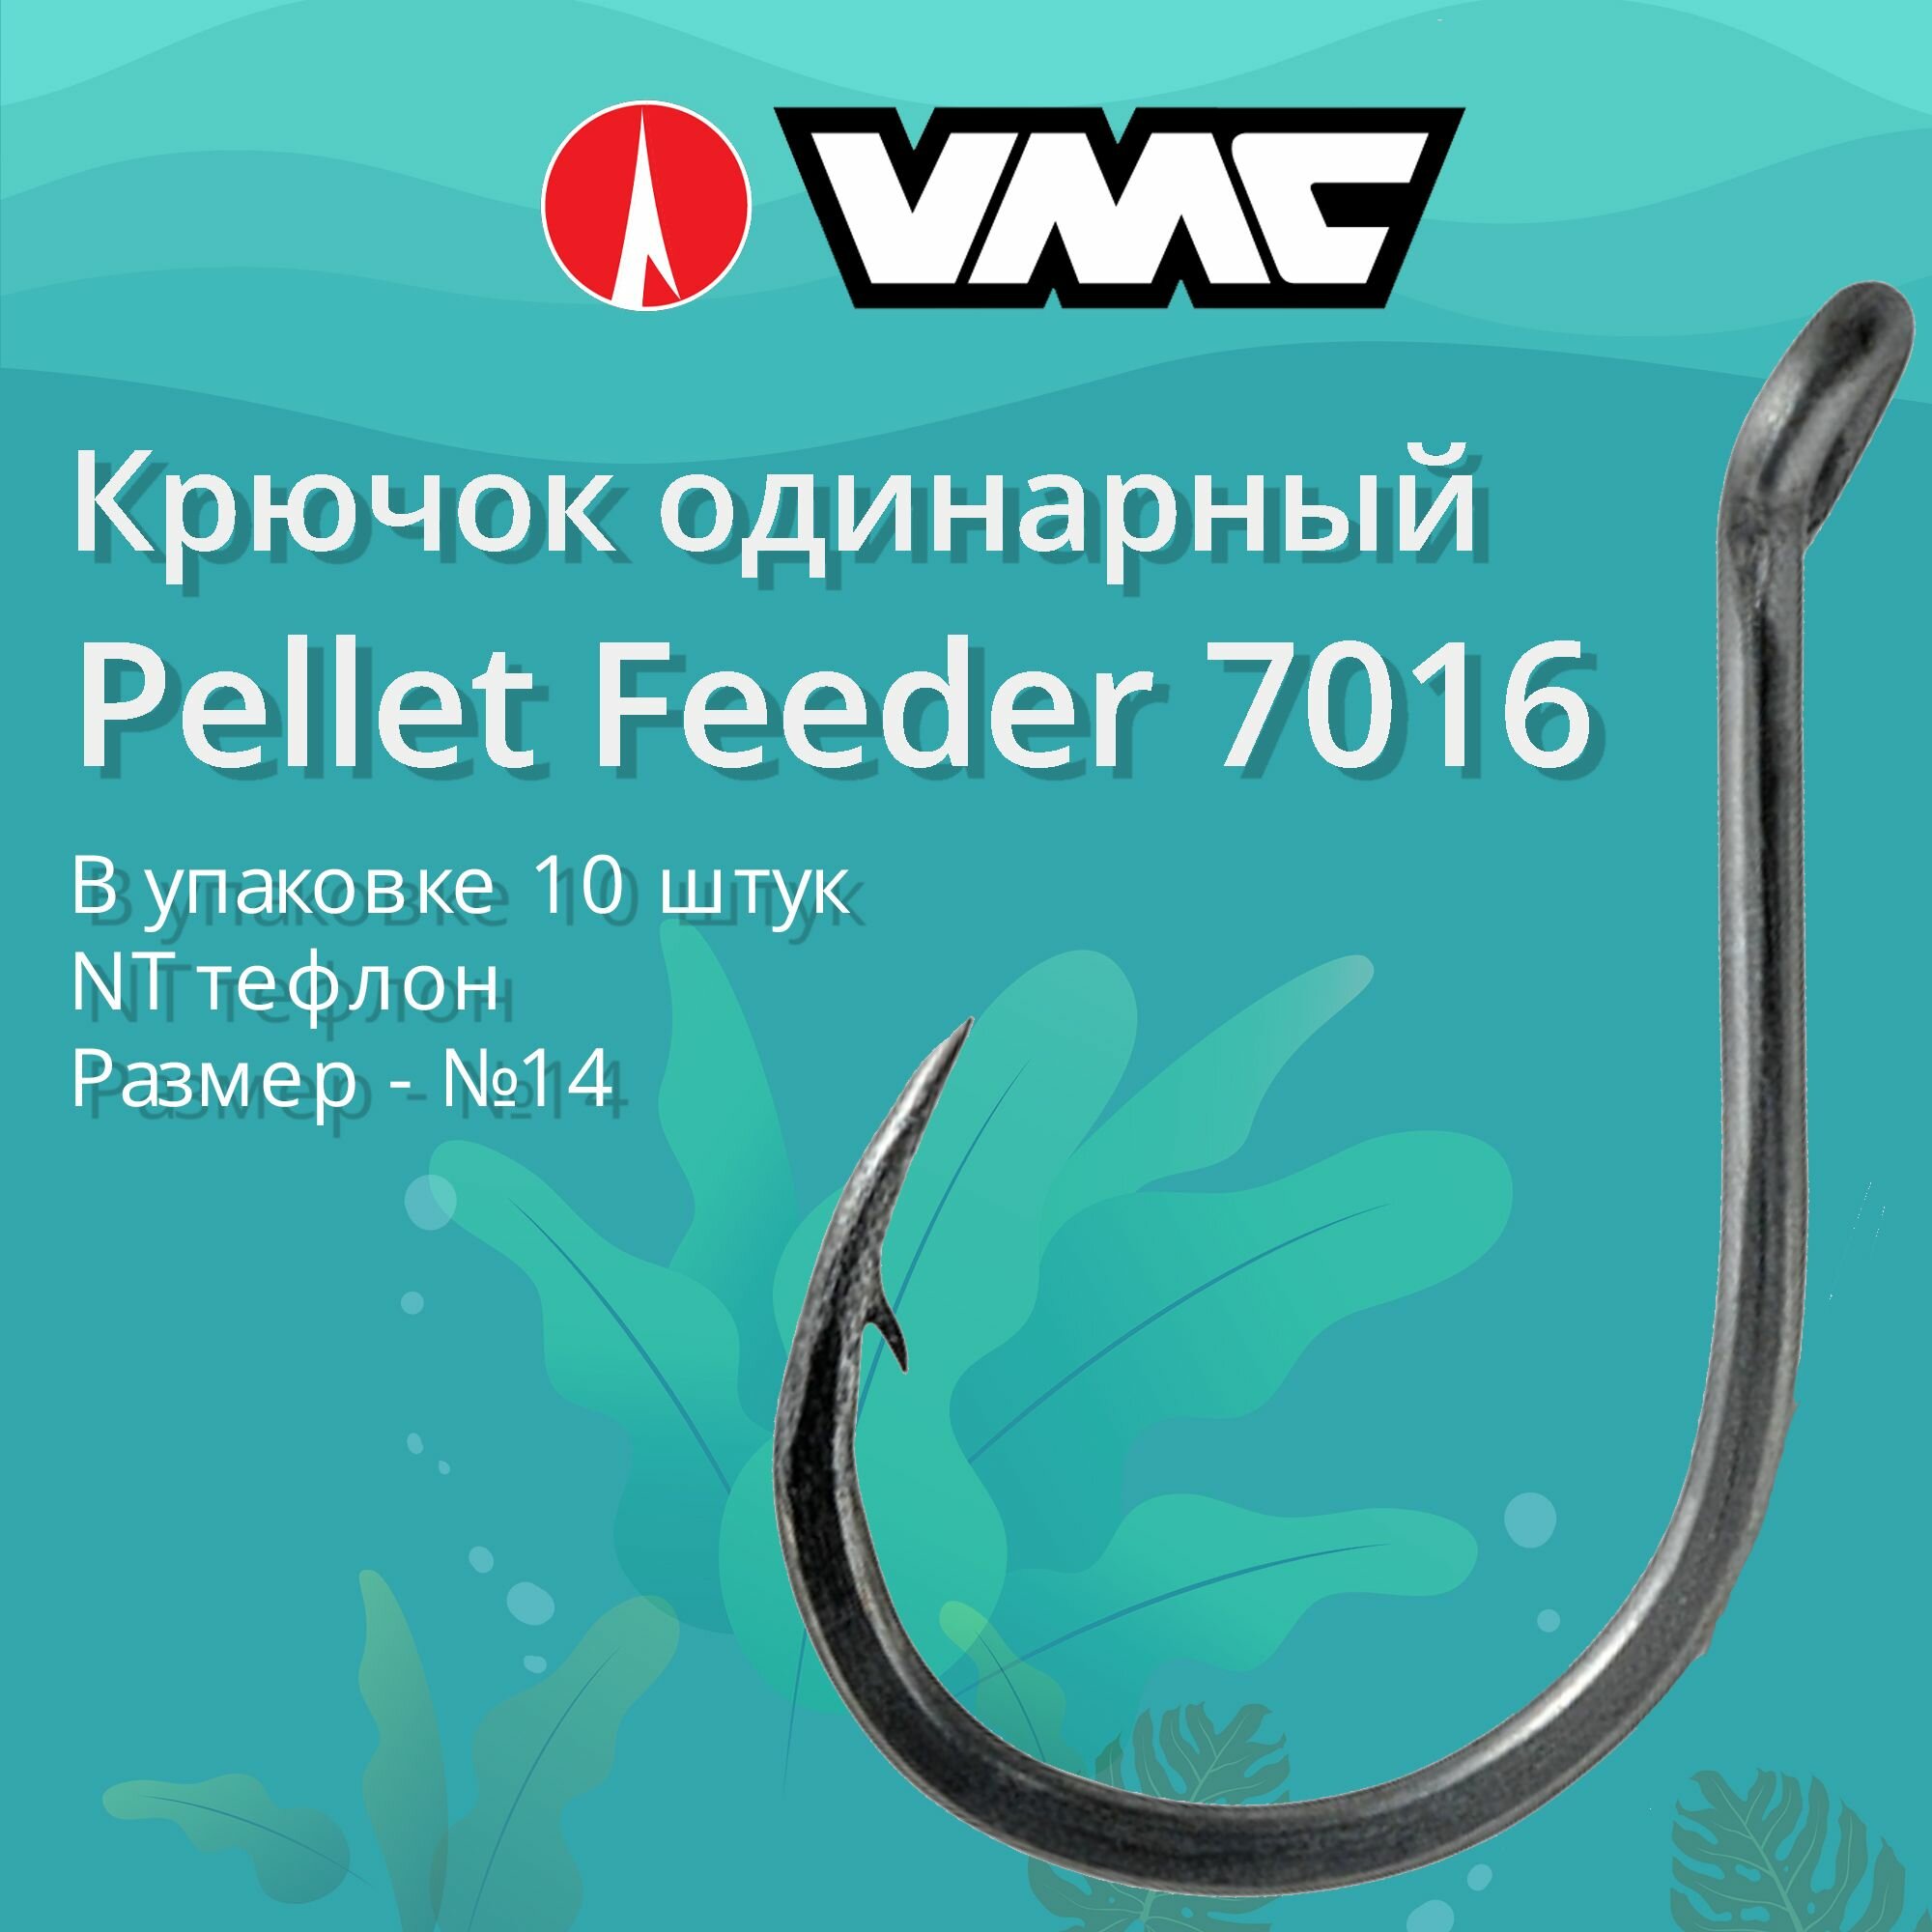 Крючки для рыбалки (одинарный) VMC Pellet Feeder 7016 NT (тефлон) №14 упаковка 10 штук